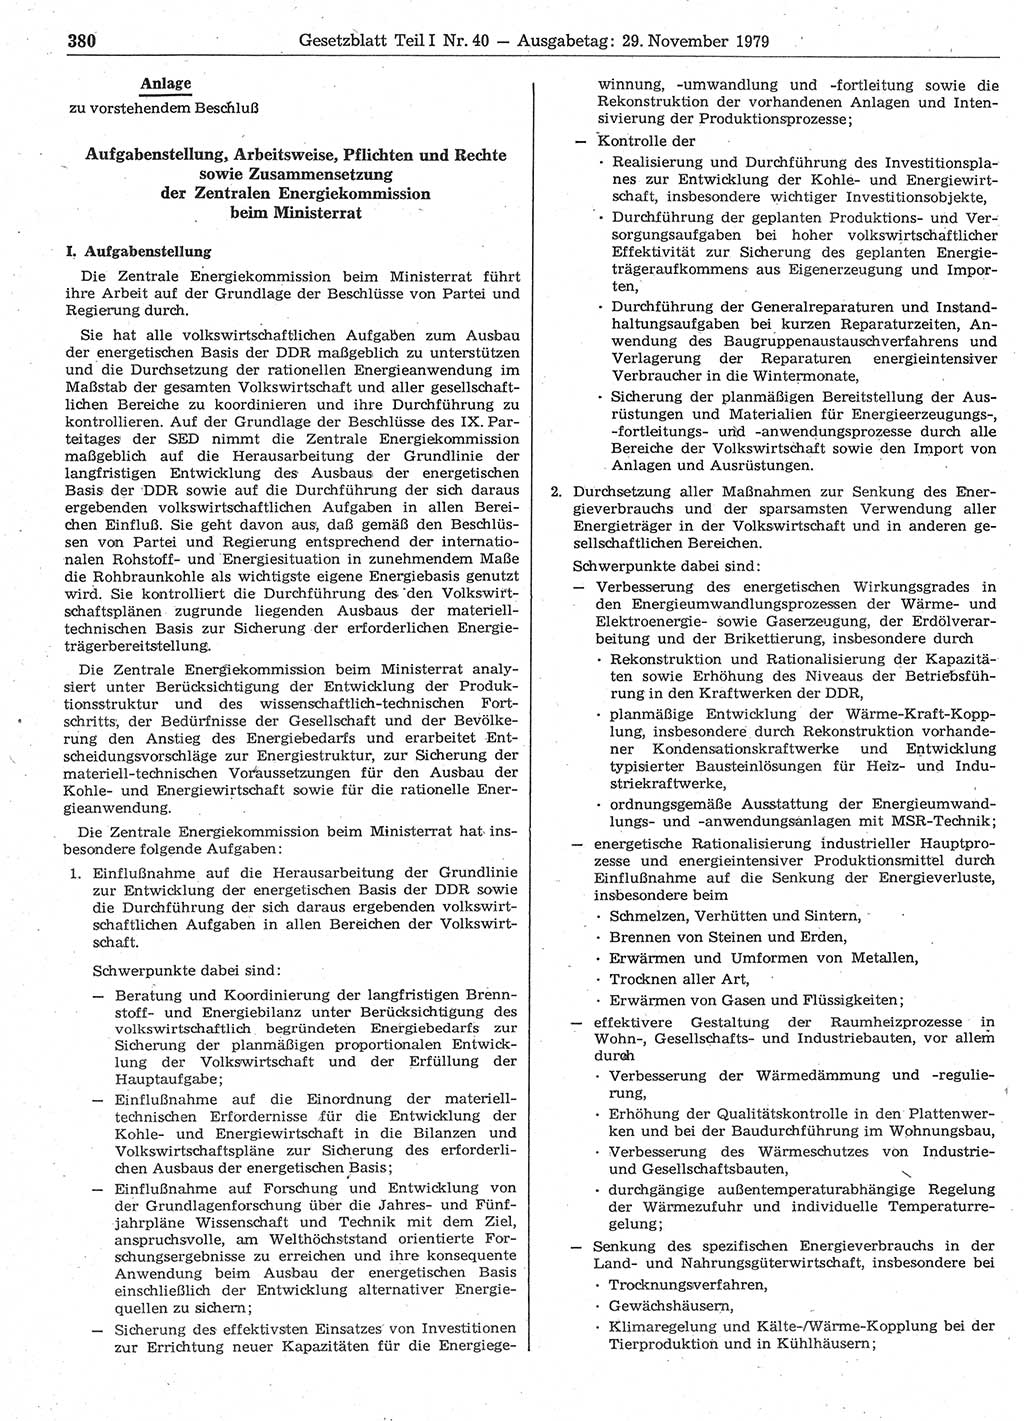 Gesetzblatt (GBl.) der Deutschen Demokratischen Republik (DDR) Teil Ⅰ 1979, Seite 380 (GBl. DDR Ⅰ 1979, S. 380)